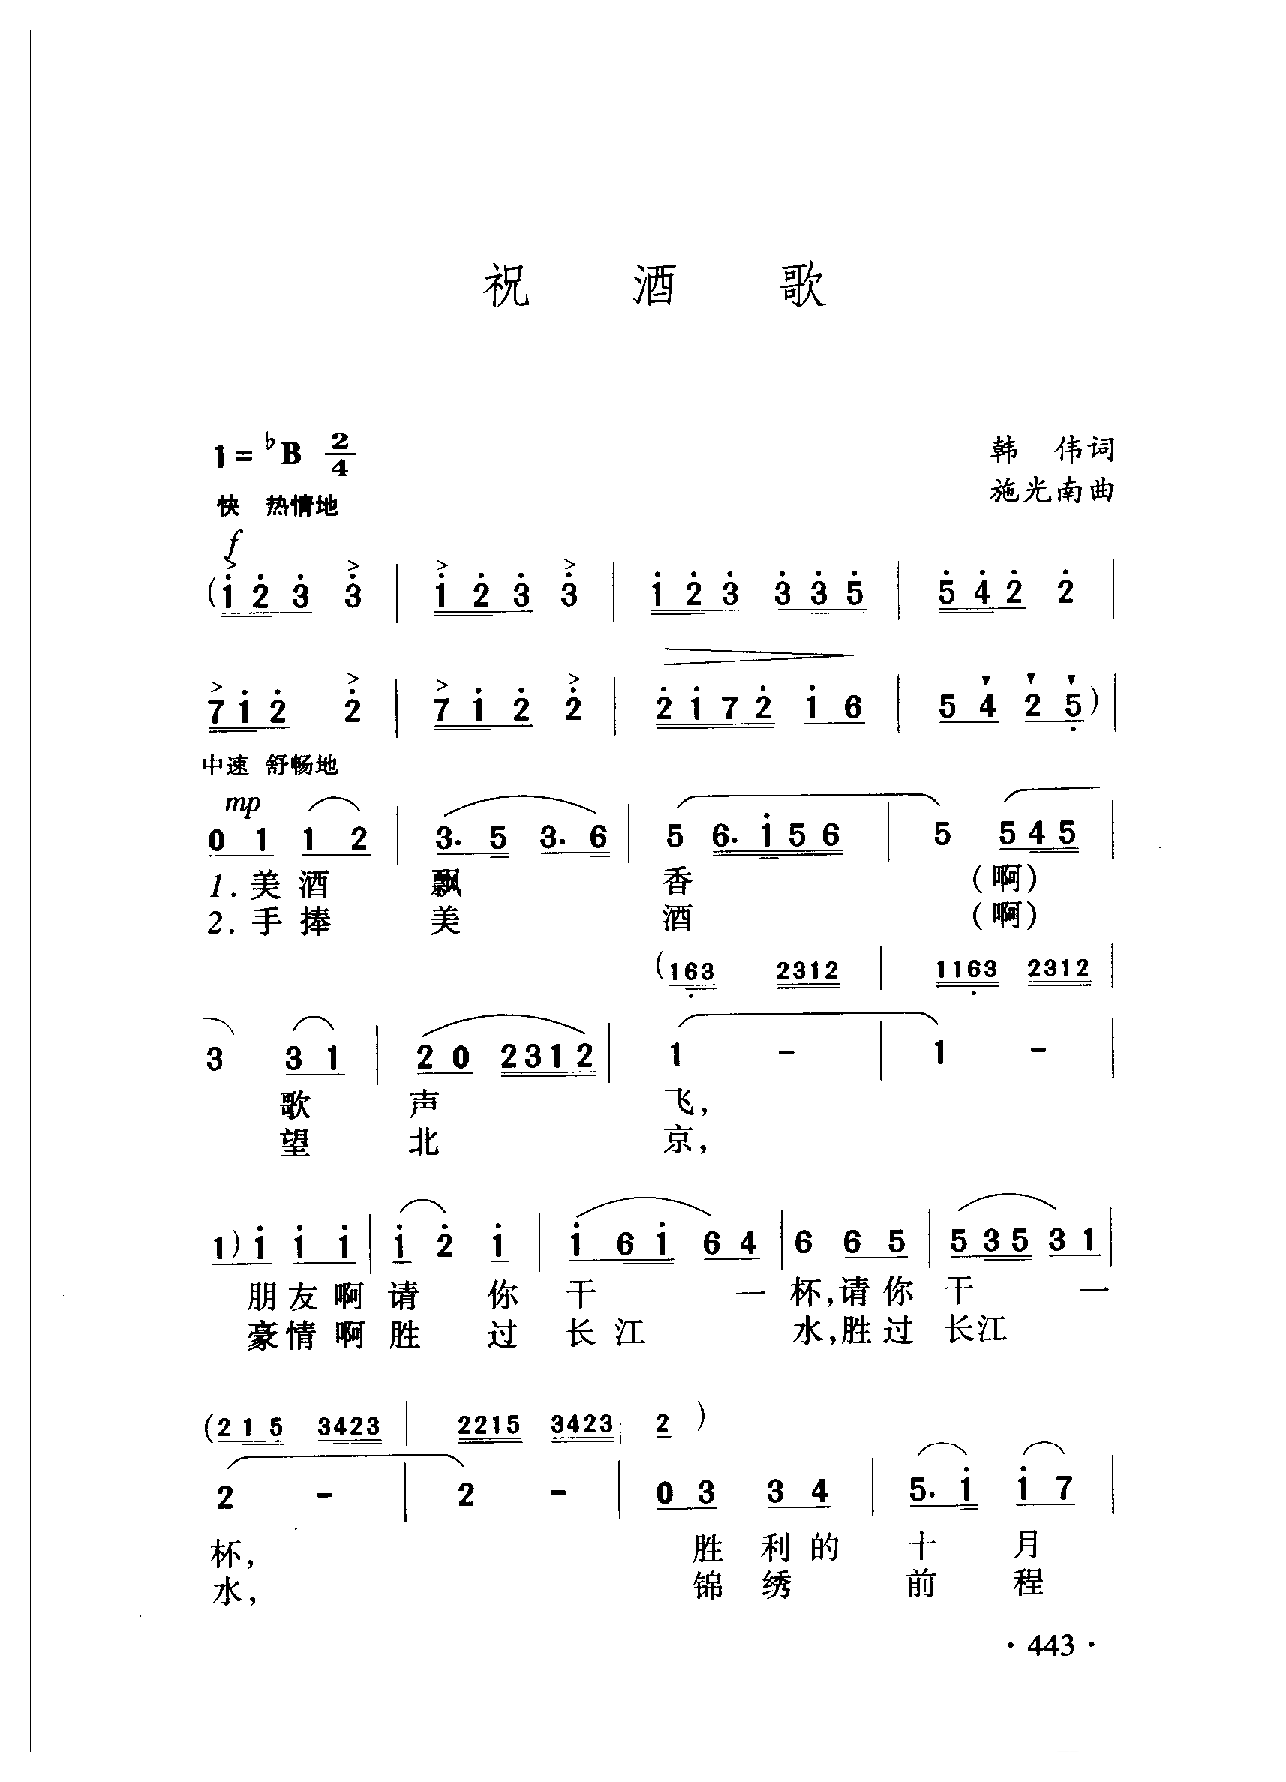 中国名歌[祝酒歌]乐谱